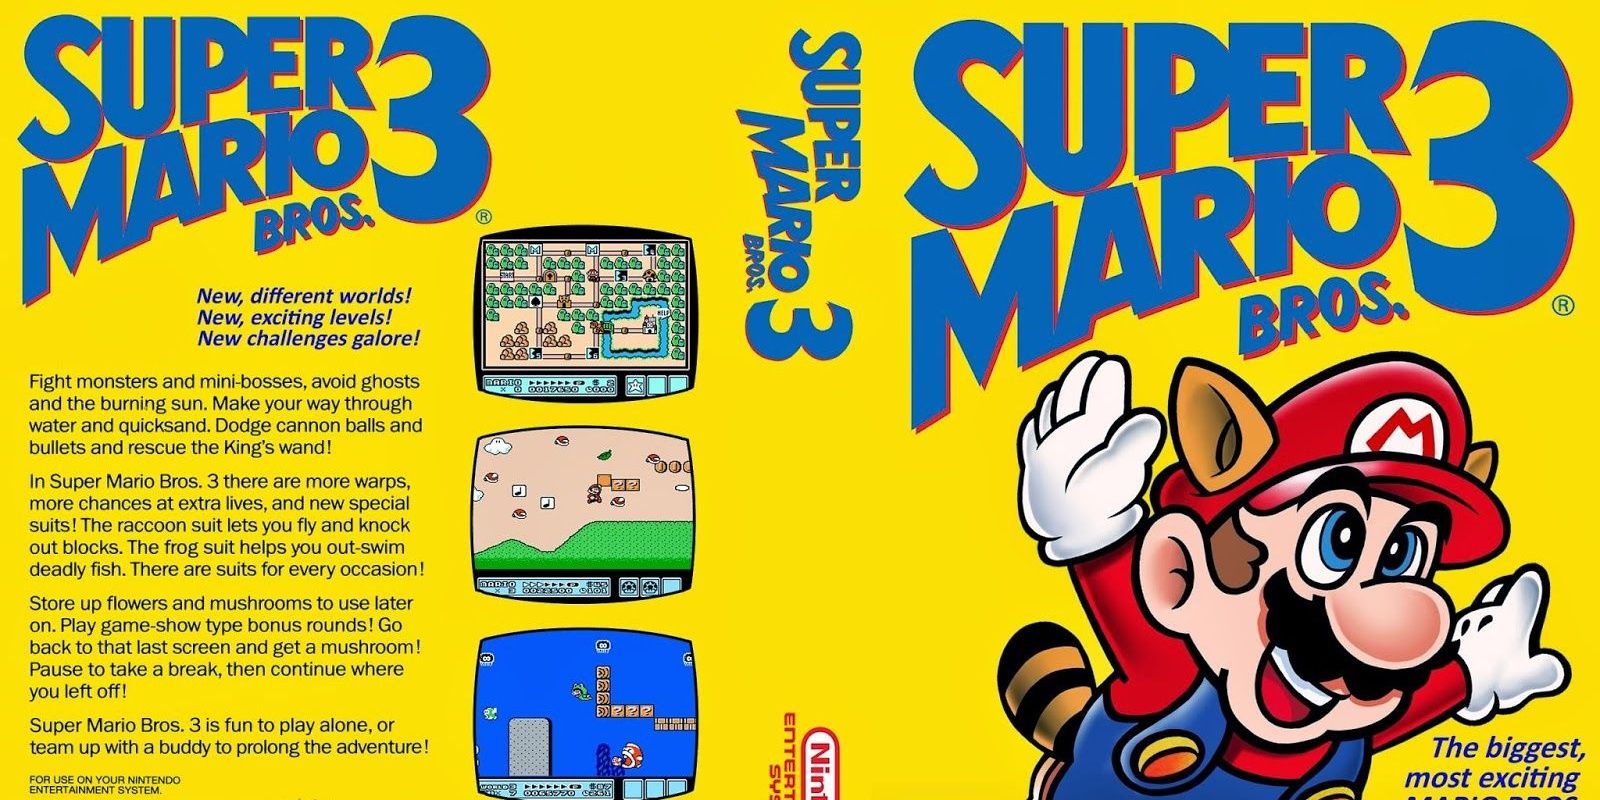 Super Mario Bros 3 full NES box